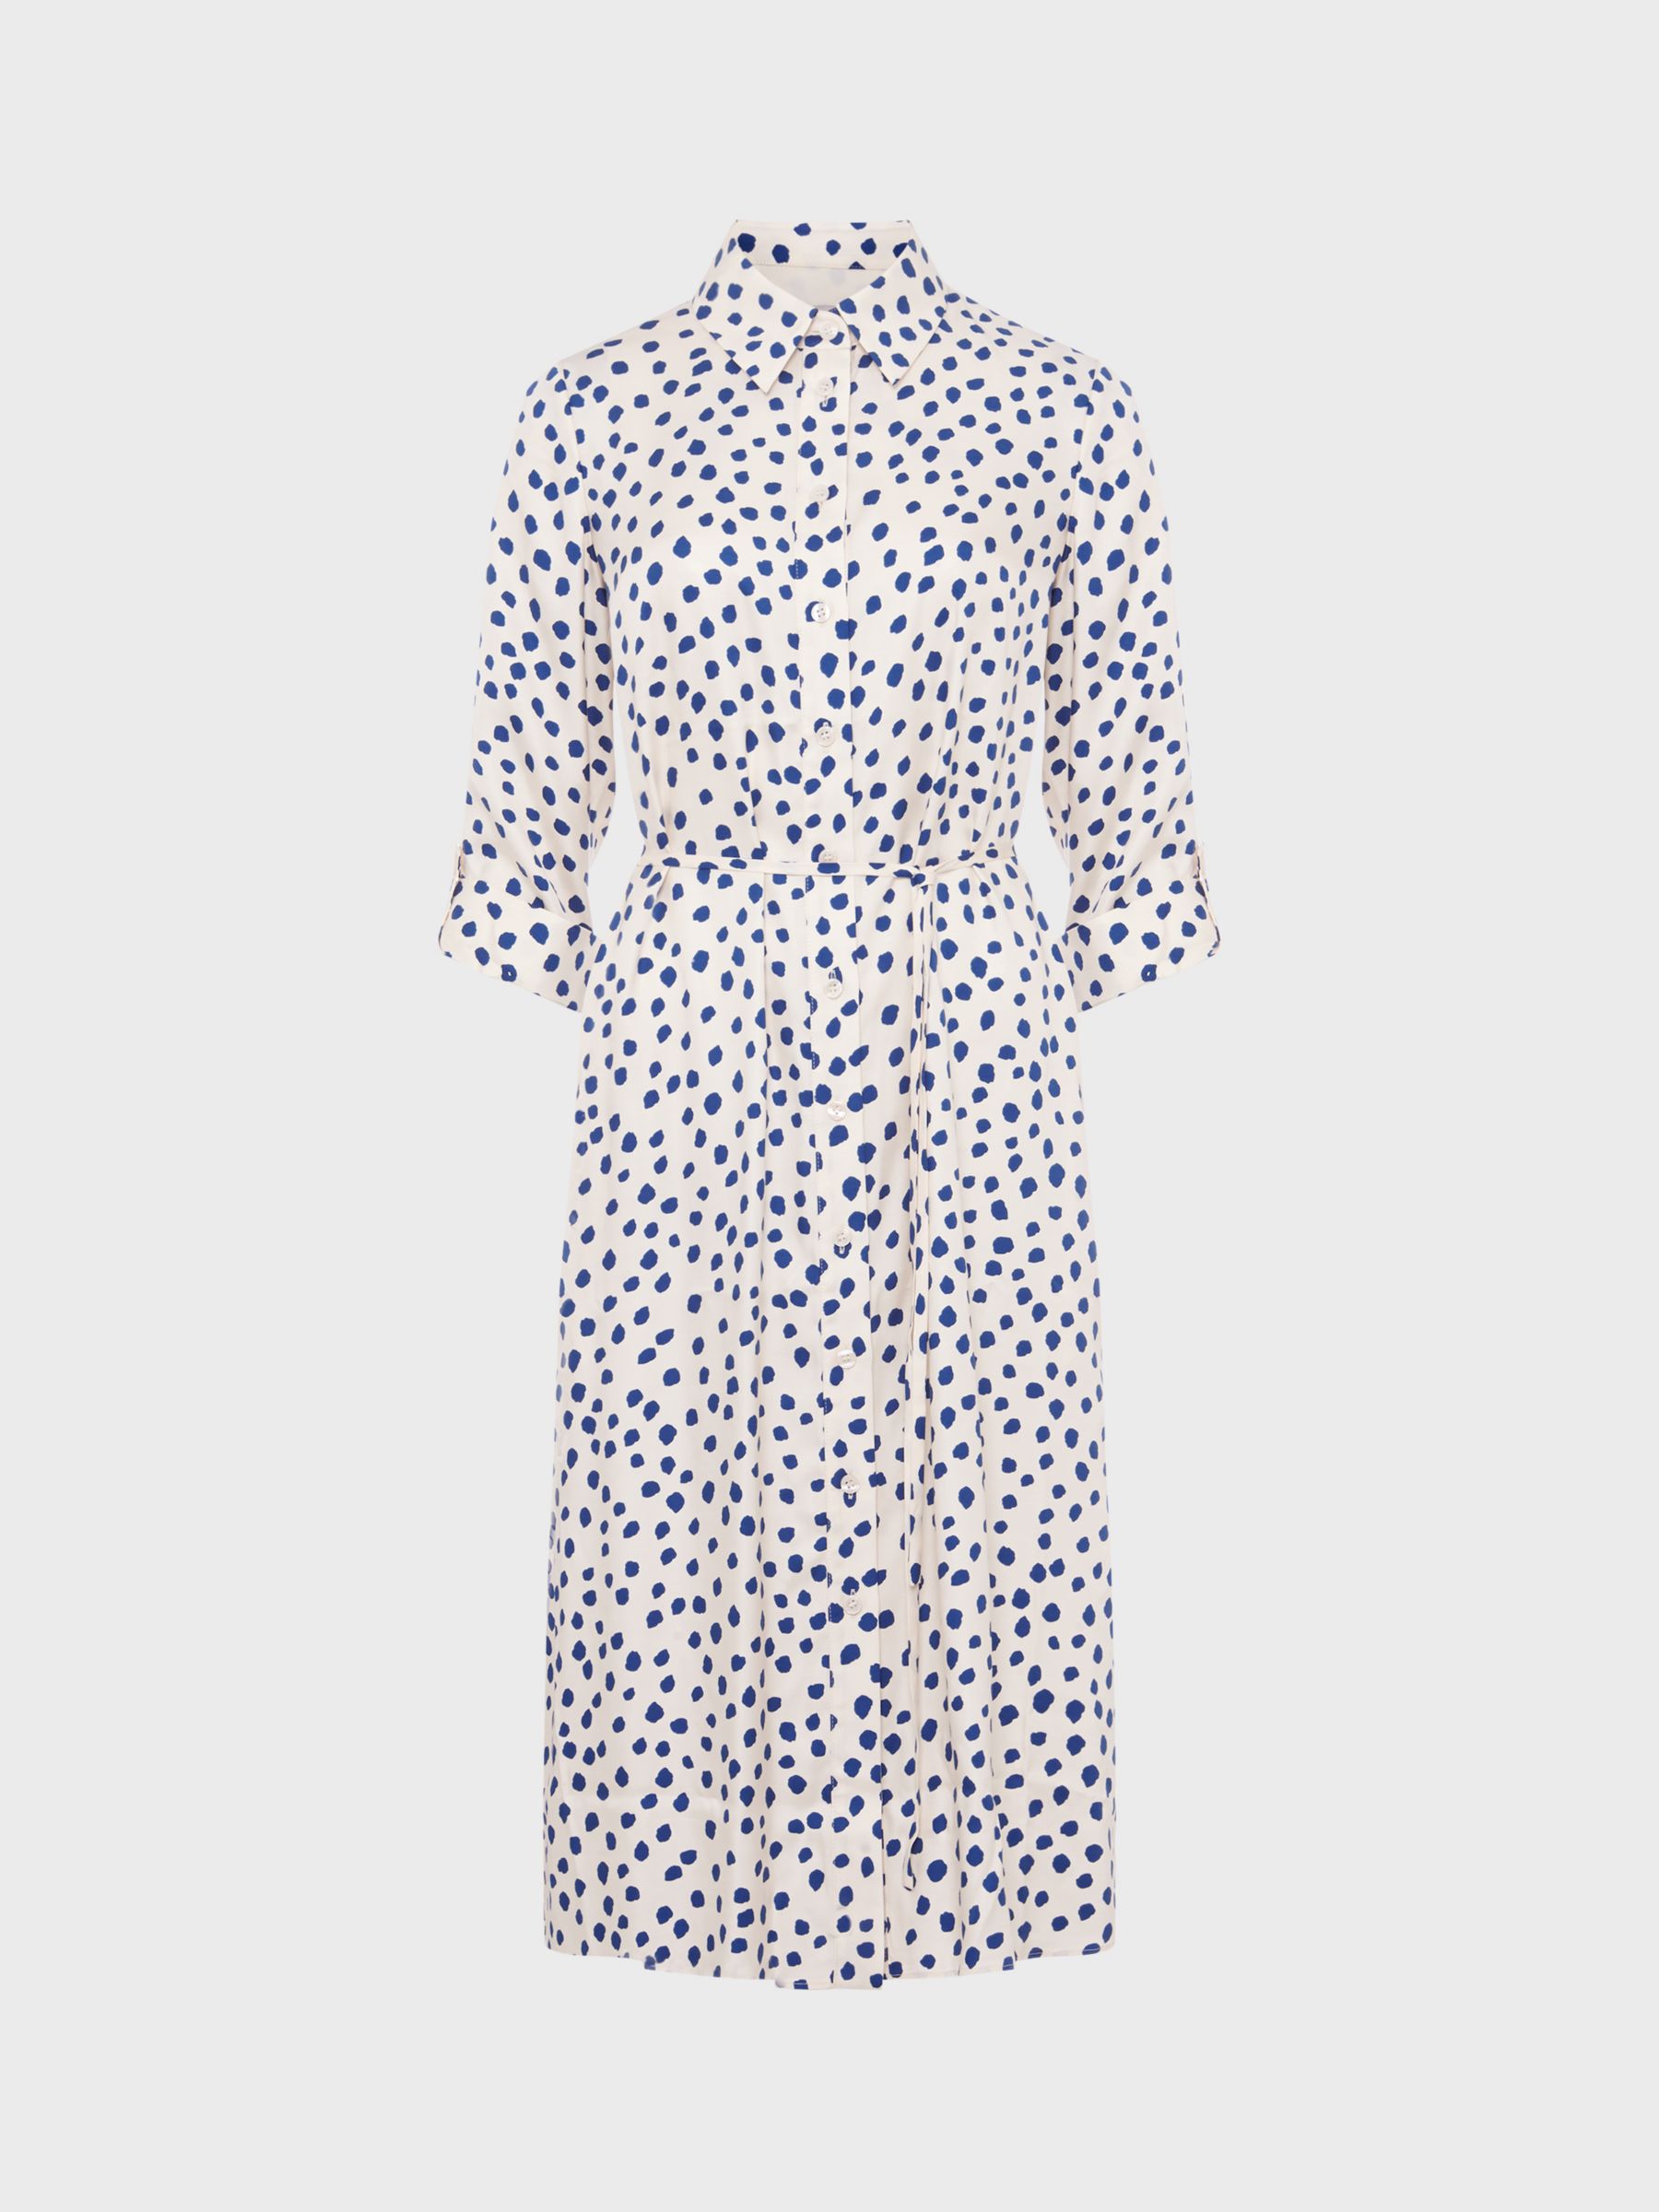 Hobbs Cali Abstract Spot Shirt Dress, Ivory Deep Blue, 12